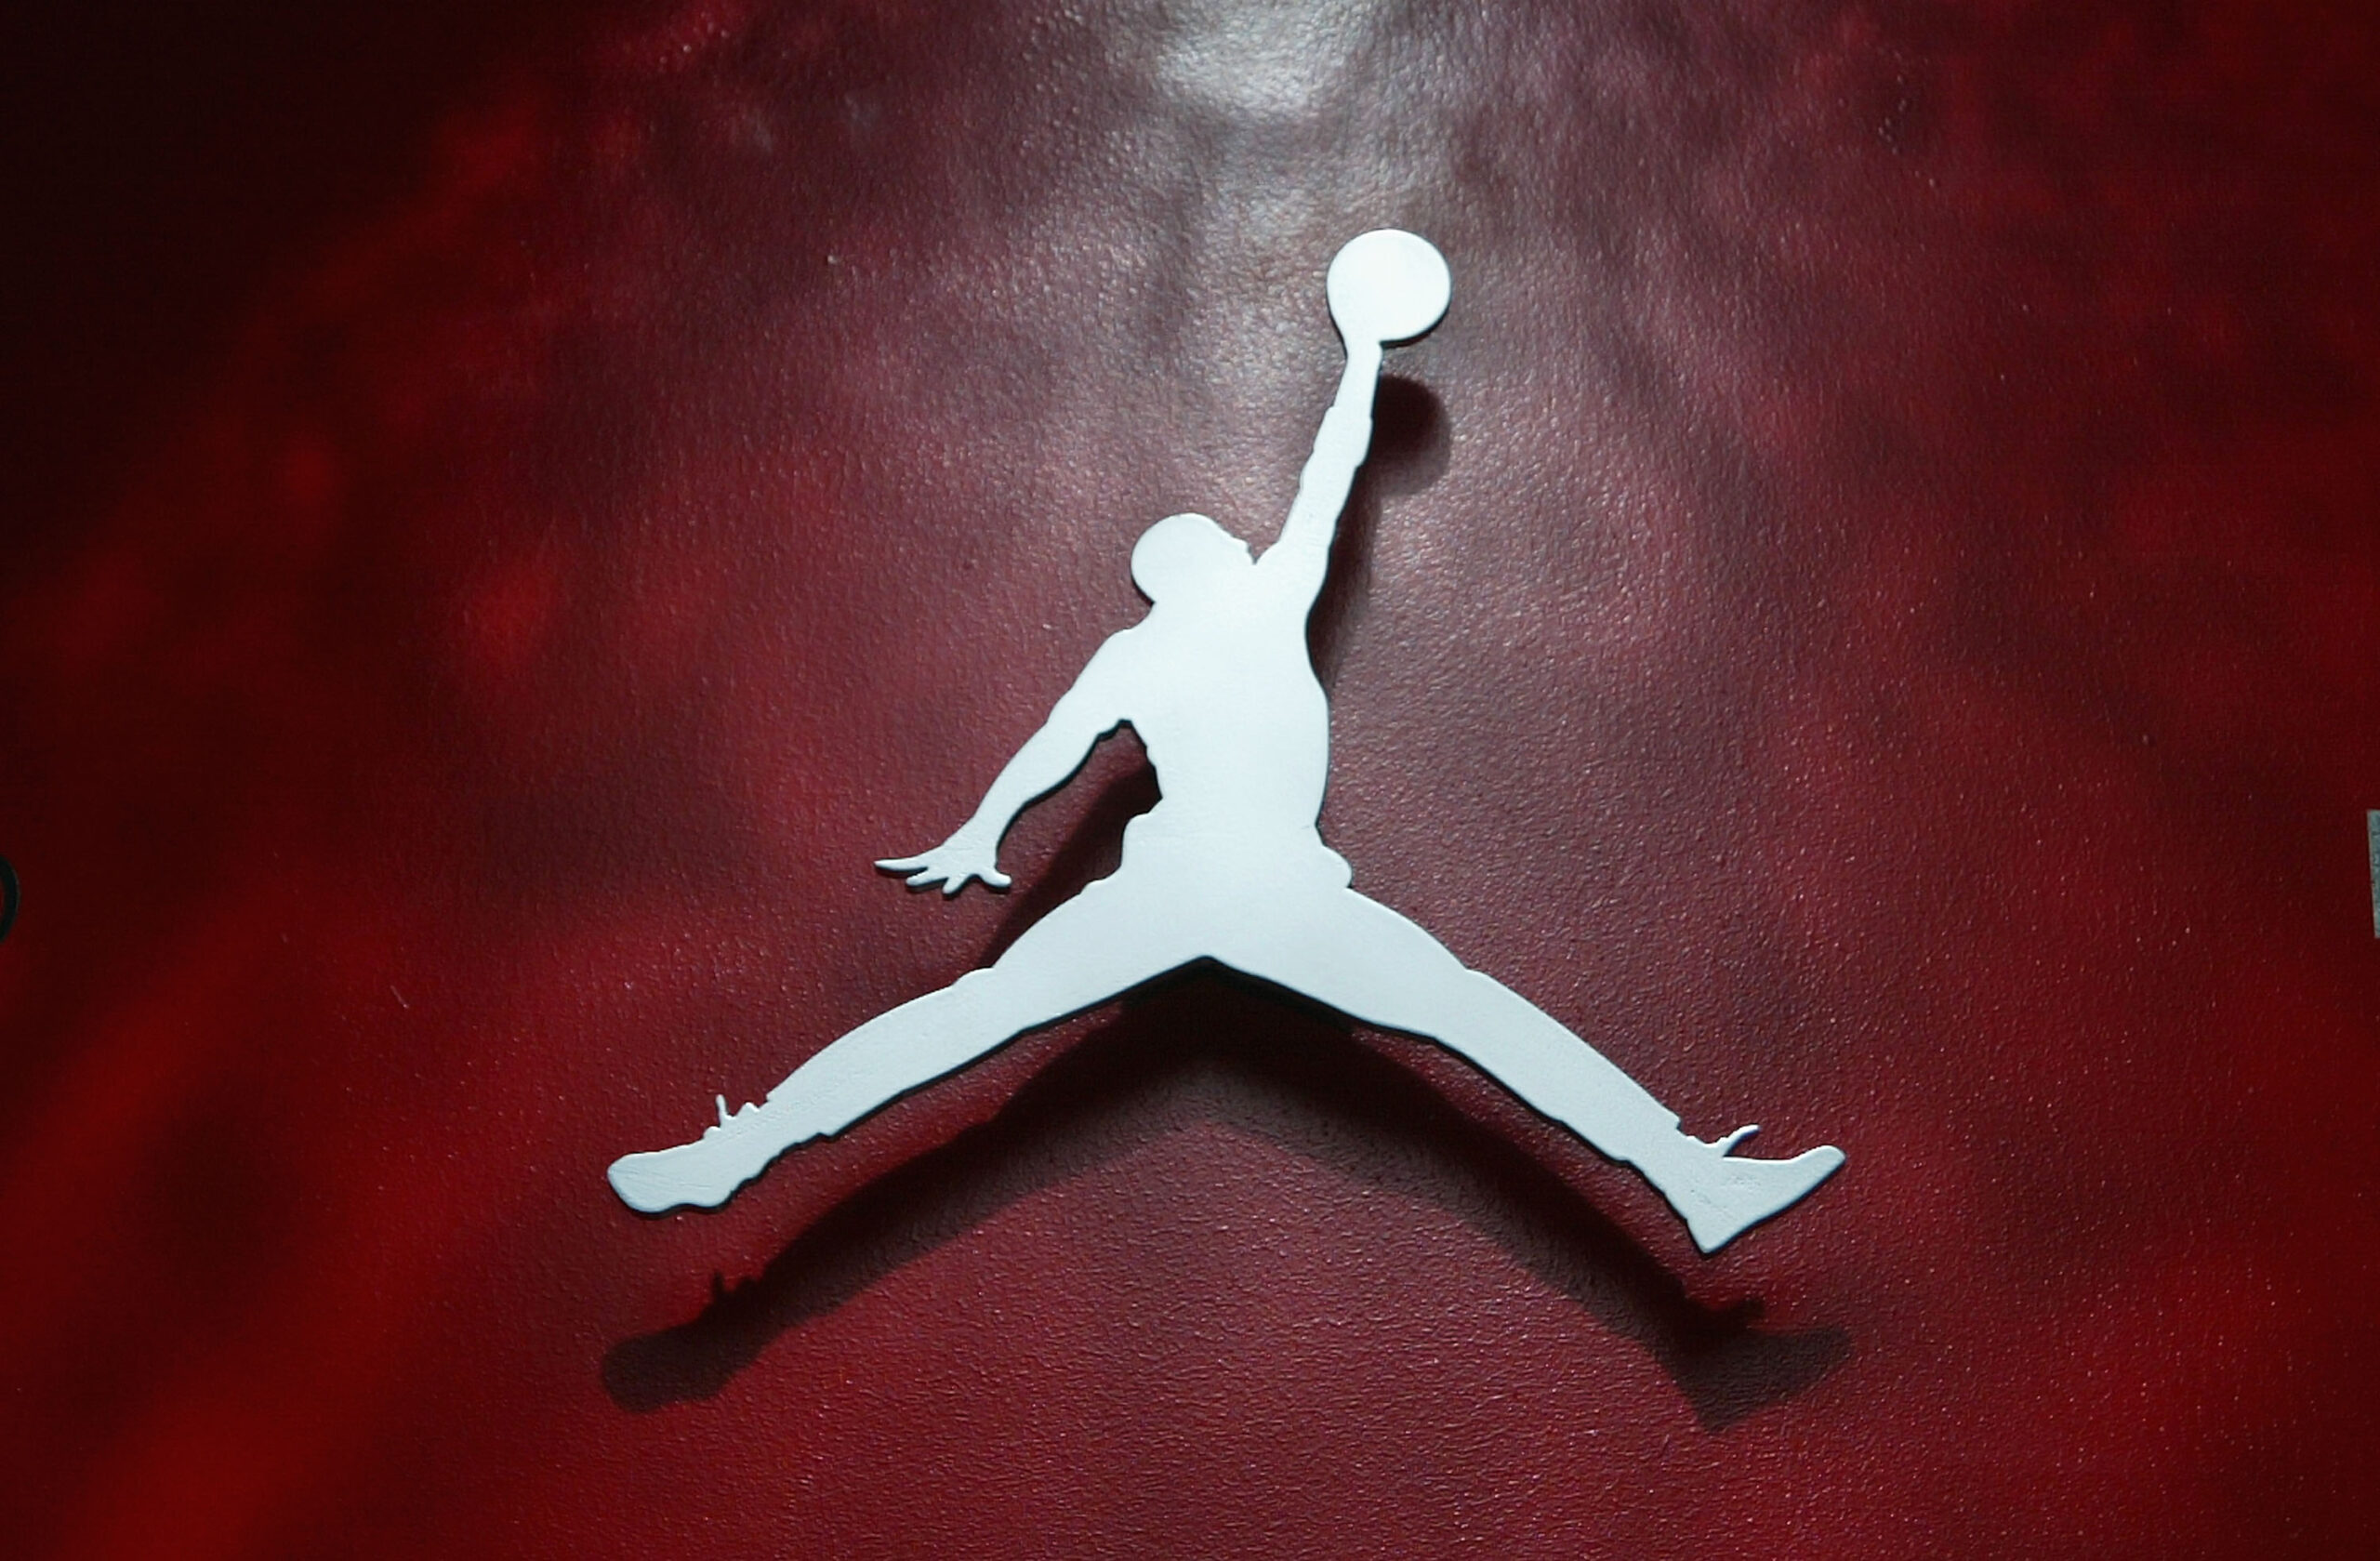 Air Jordan 3 Craft “Ivory” New Photos